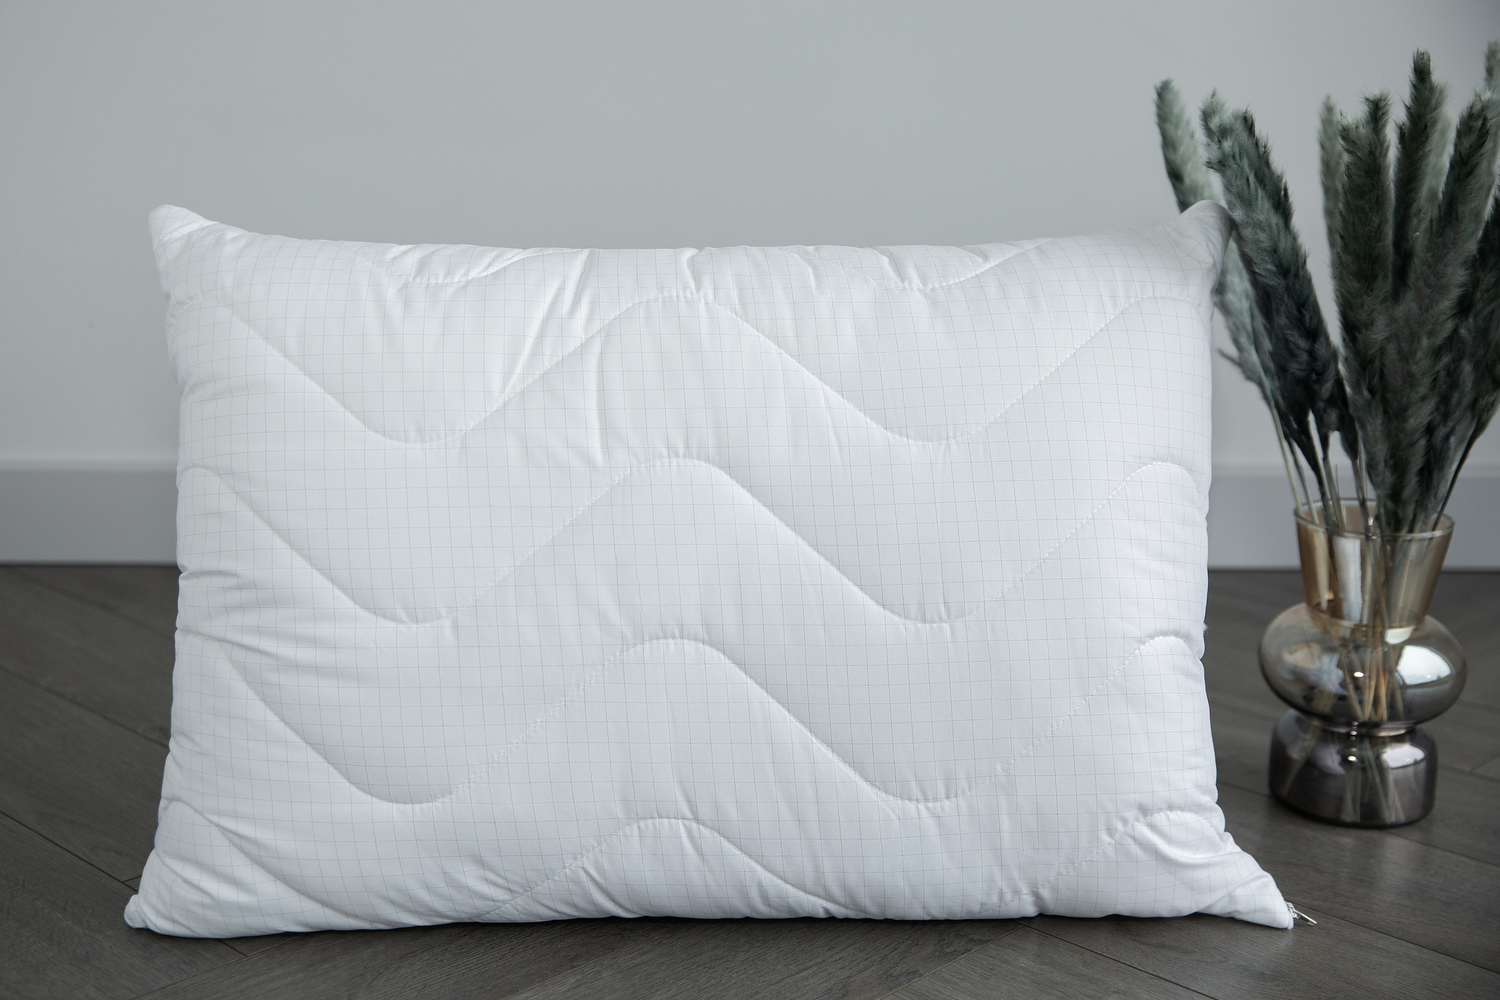 Antistresinė pagalvė “Carbon” 50×70 cm